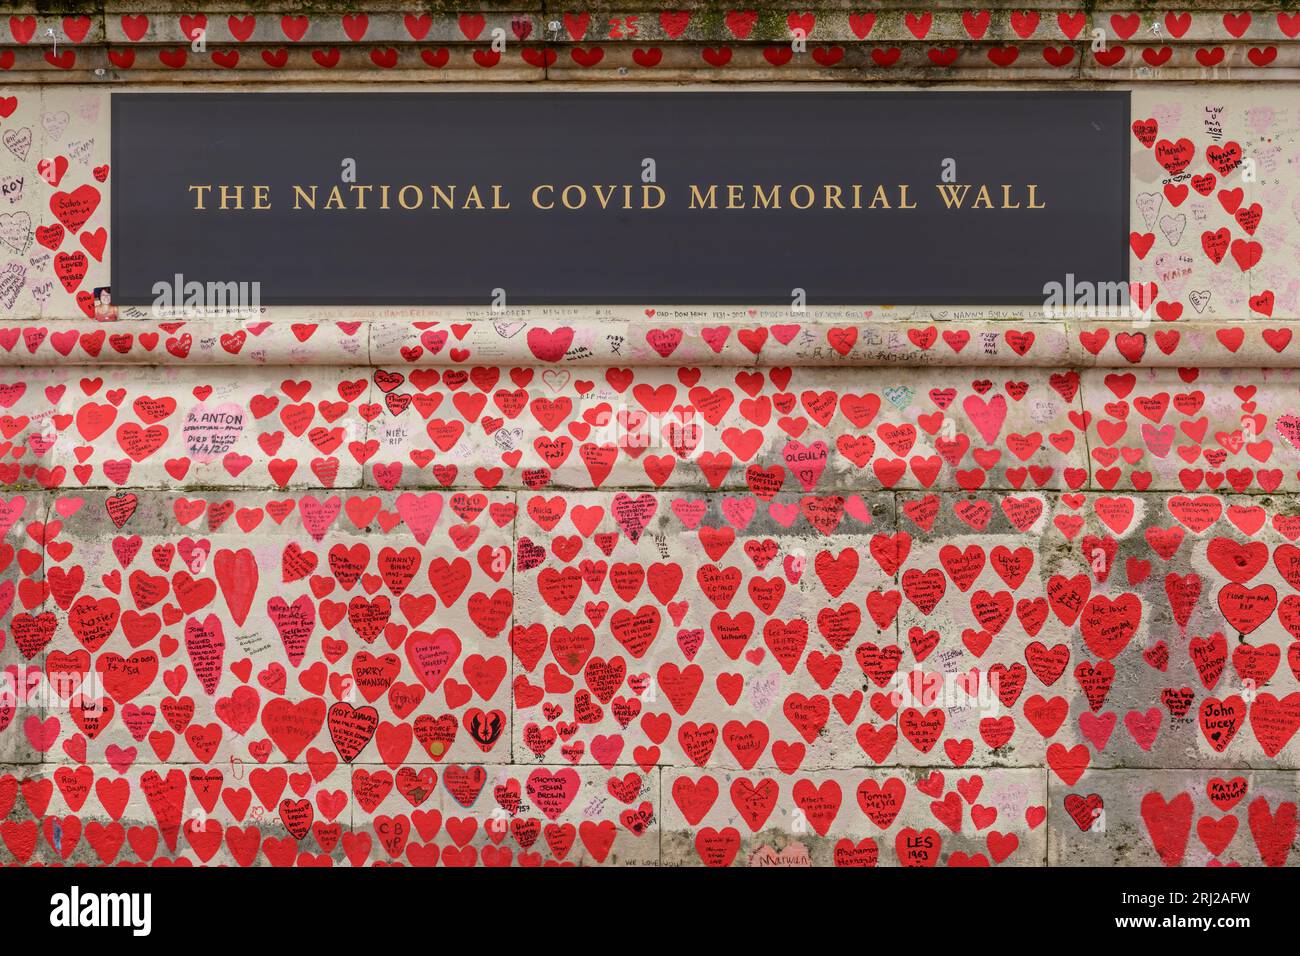 Le National Covid Memorial Wall est une fresque publique commémorant les victimes de la pandémie de COVID-19 au Royaume-Uni. S'étirant sur cinq cents mètres de long Banque D'Images